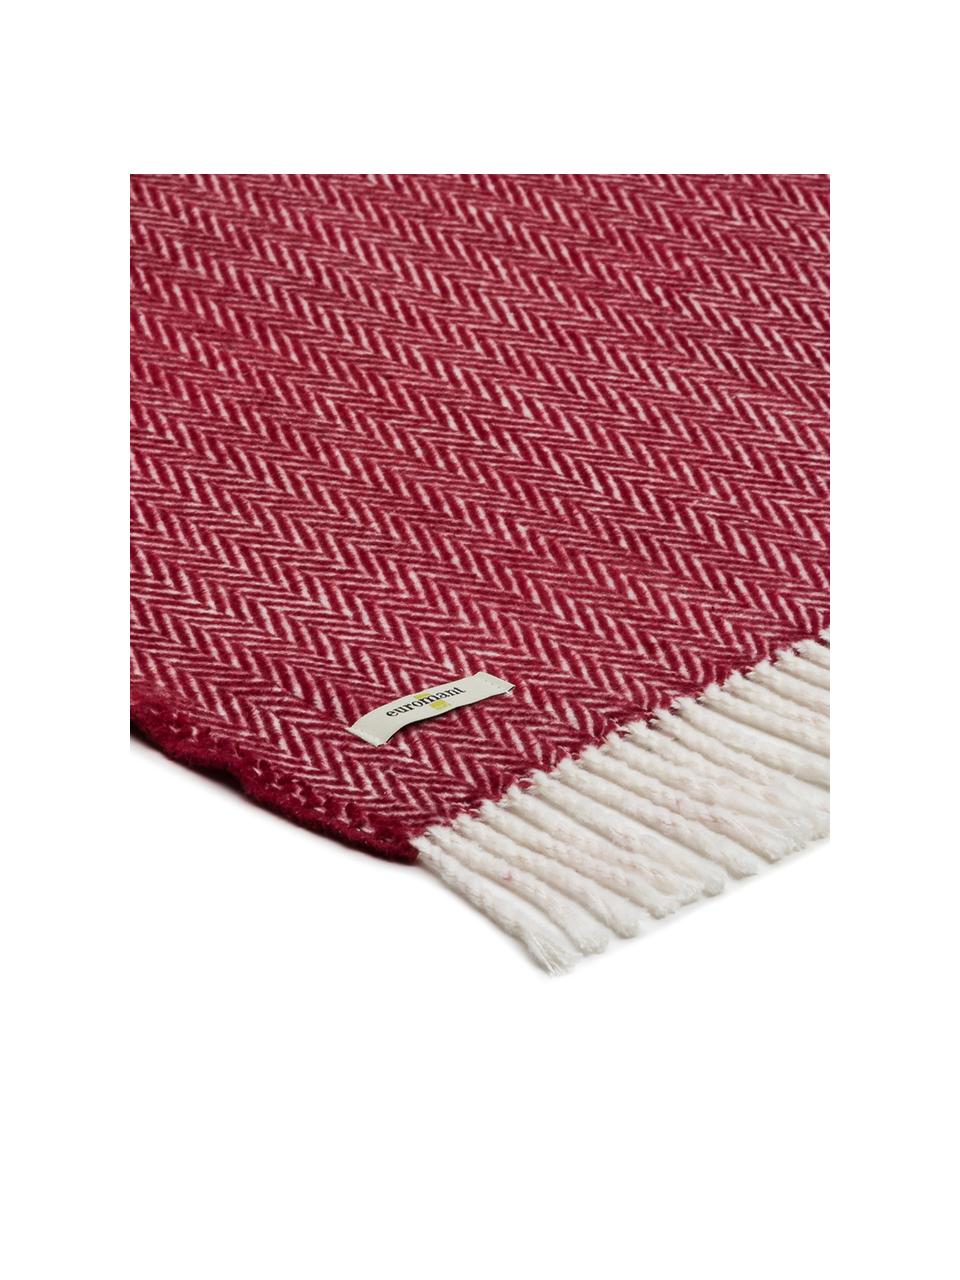 Plaid coton rouge Skyline, Bordeaux, blanc cassé